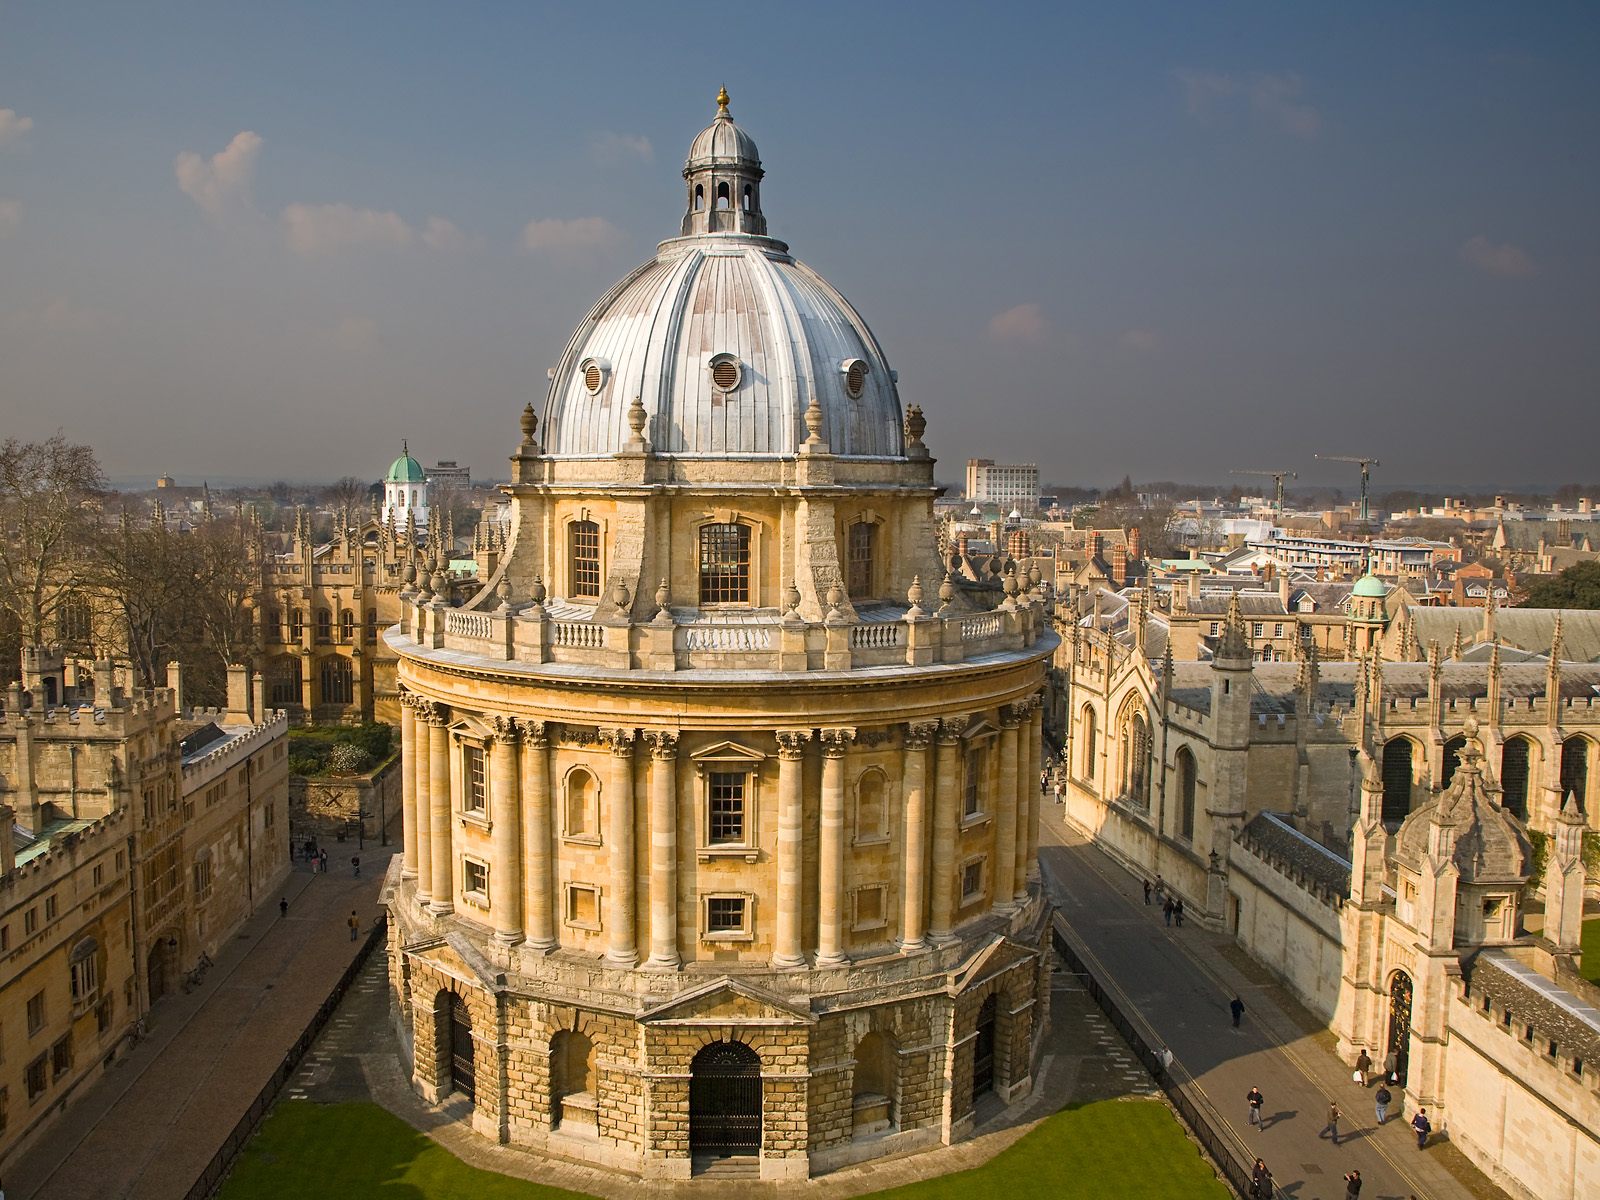 Oksfordskij University / University of Oxford